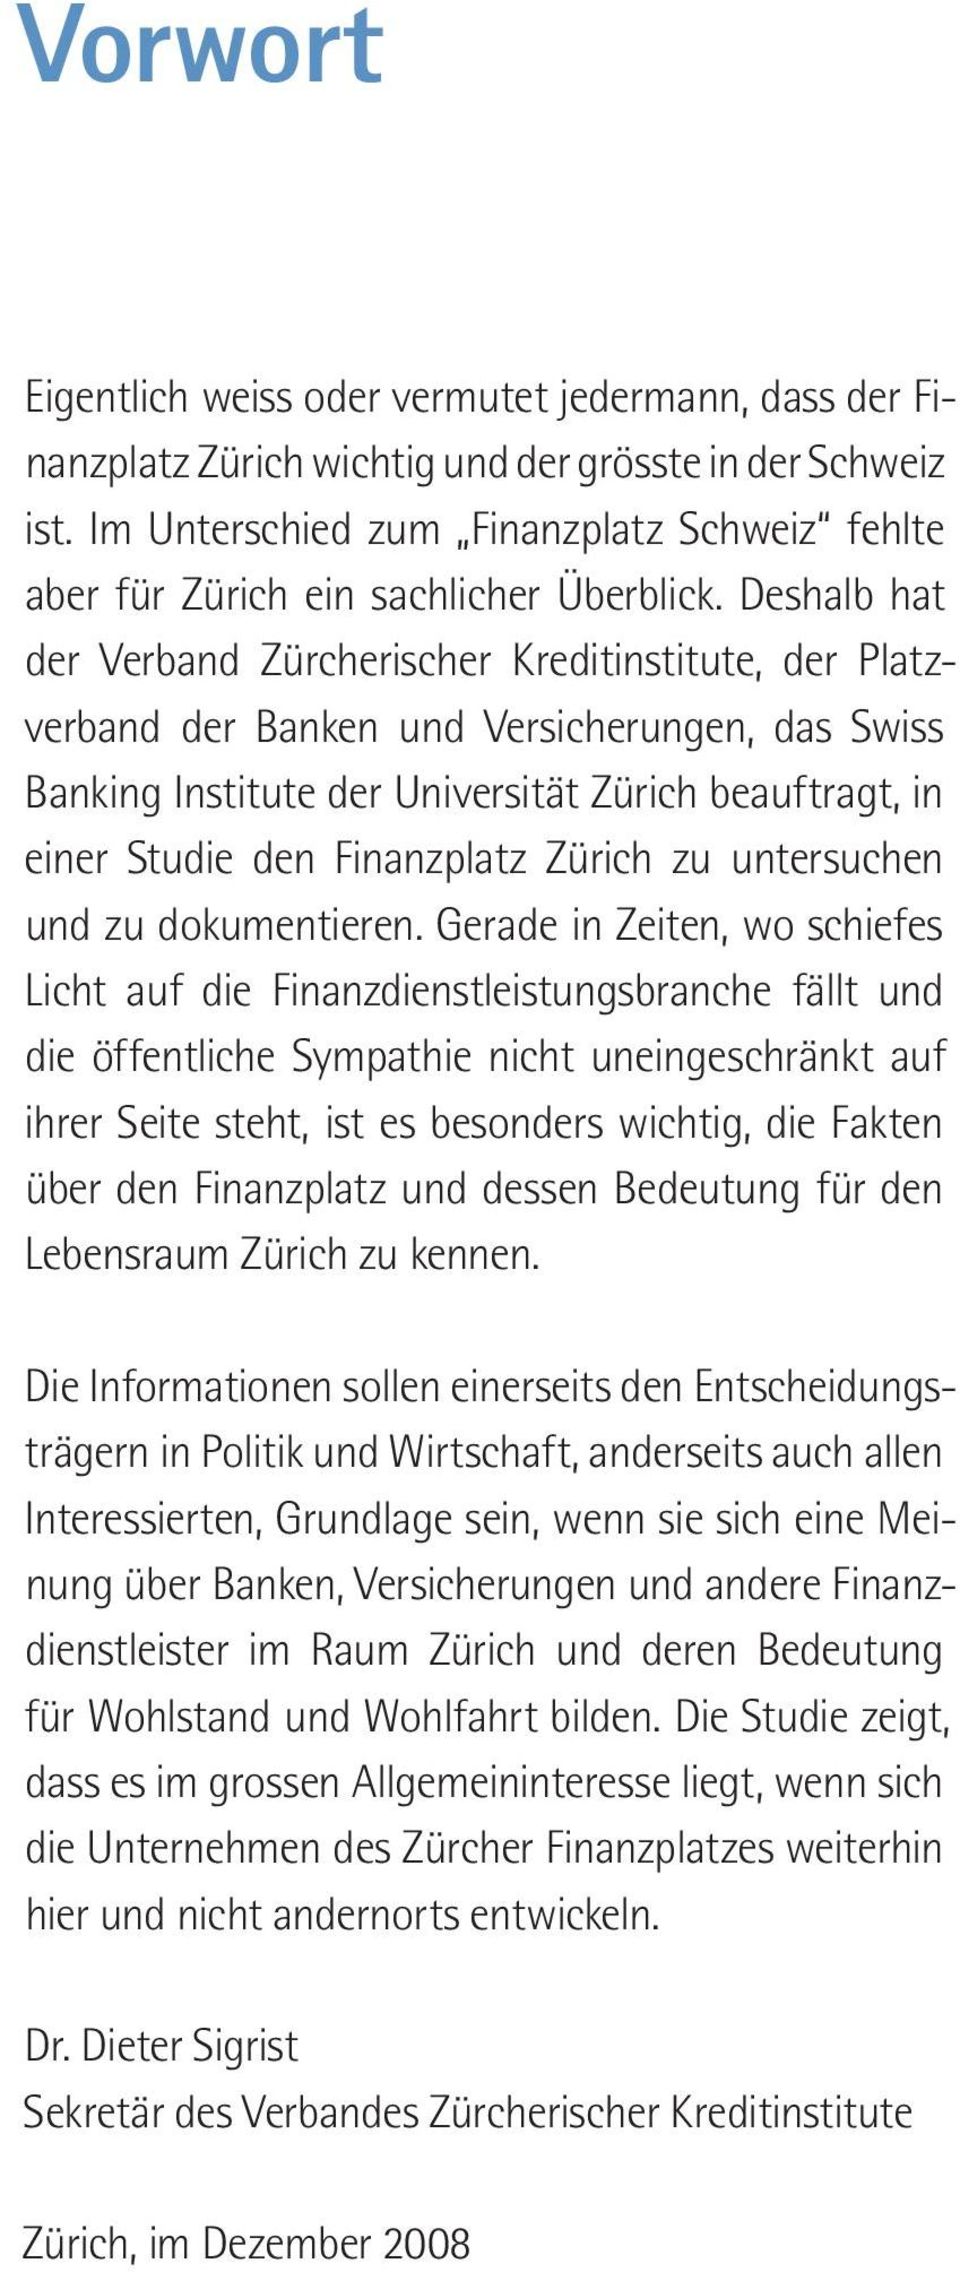 Deshalb hat der Verband Zürcherischer Kreditinstitute, der Platzverband der Banken und Versicherungen, das Swiss Banking Institute der Universität Zürich beauftragt, in einer Studie den Finanzplatz